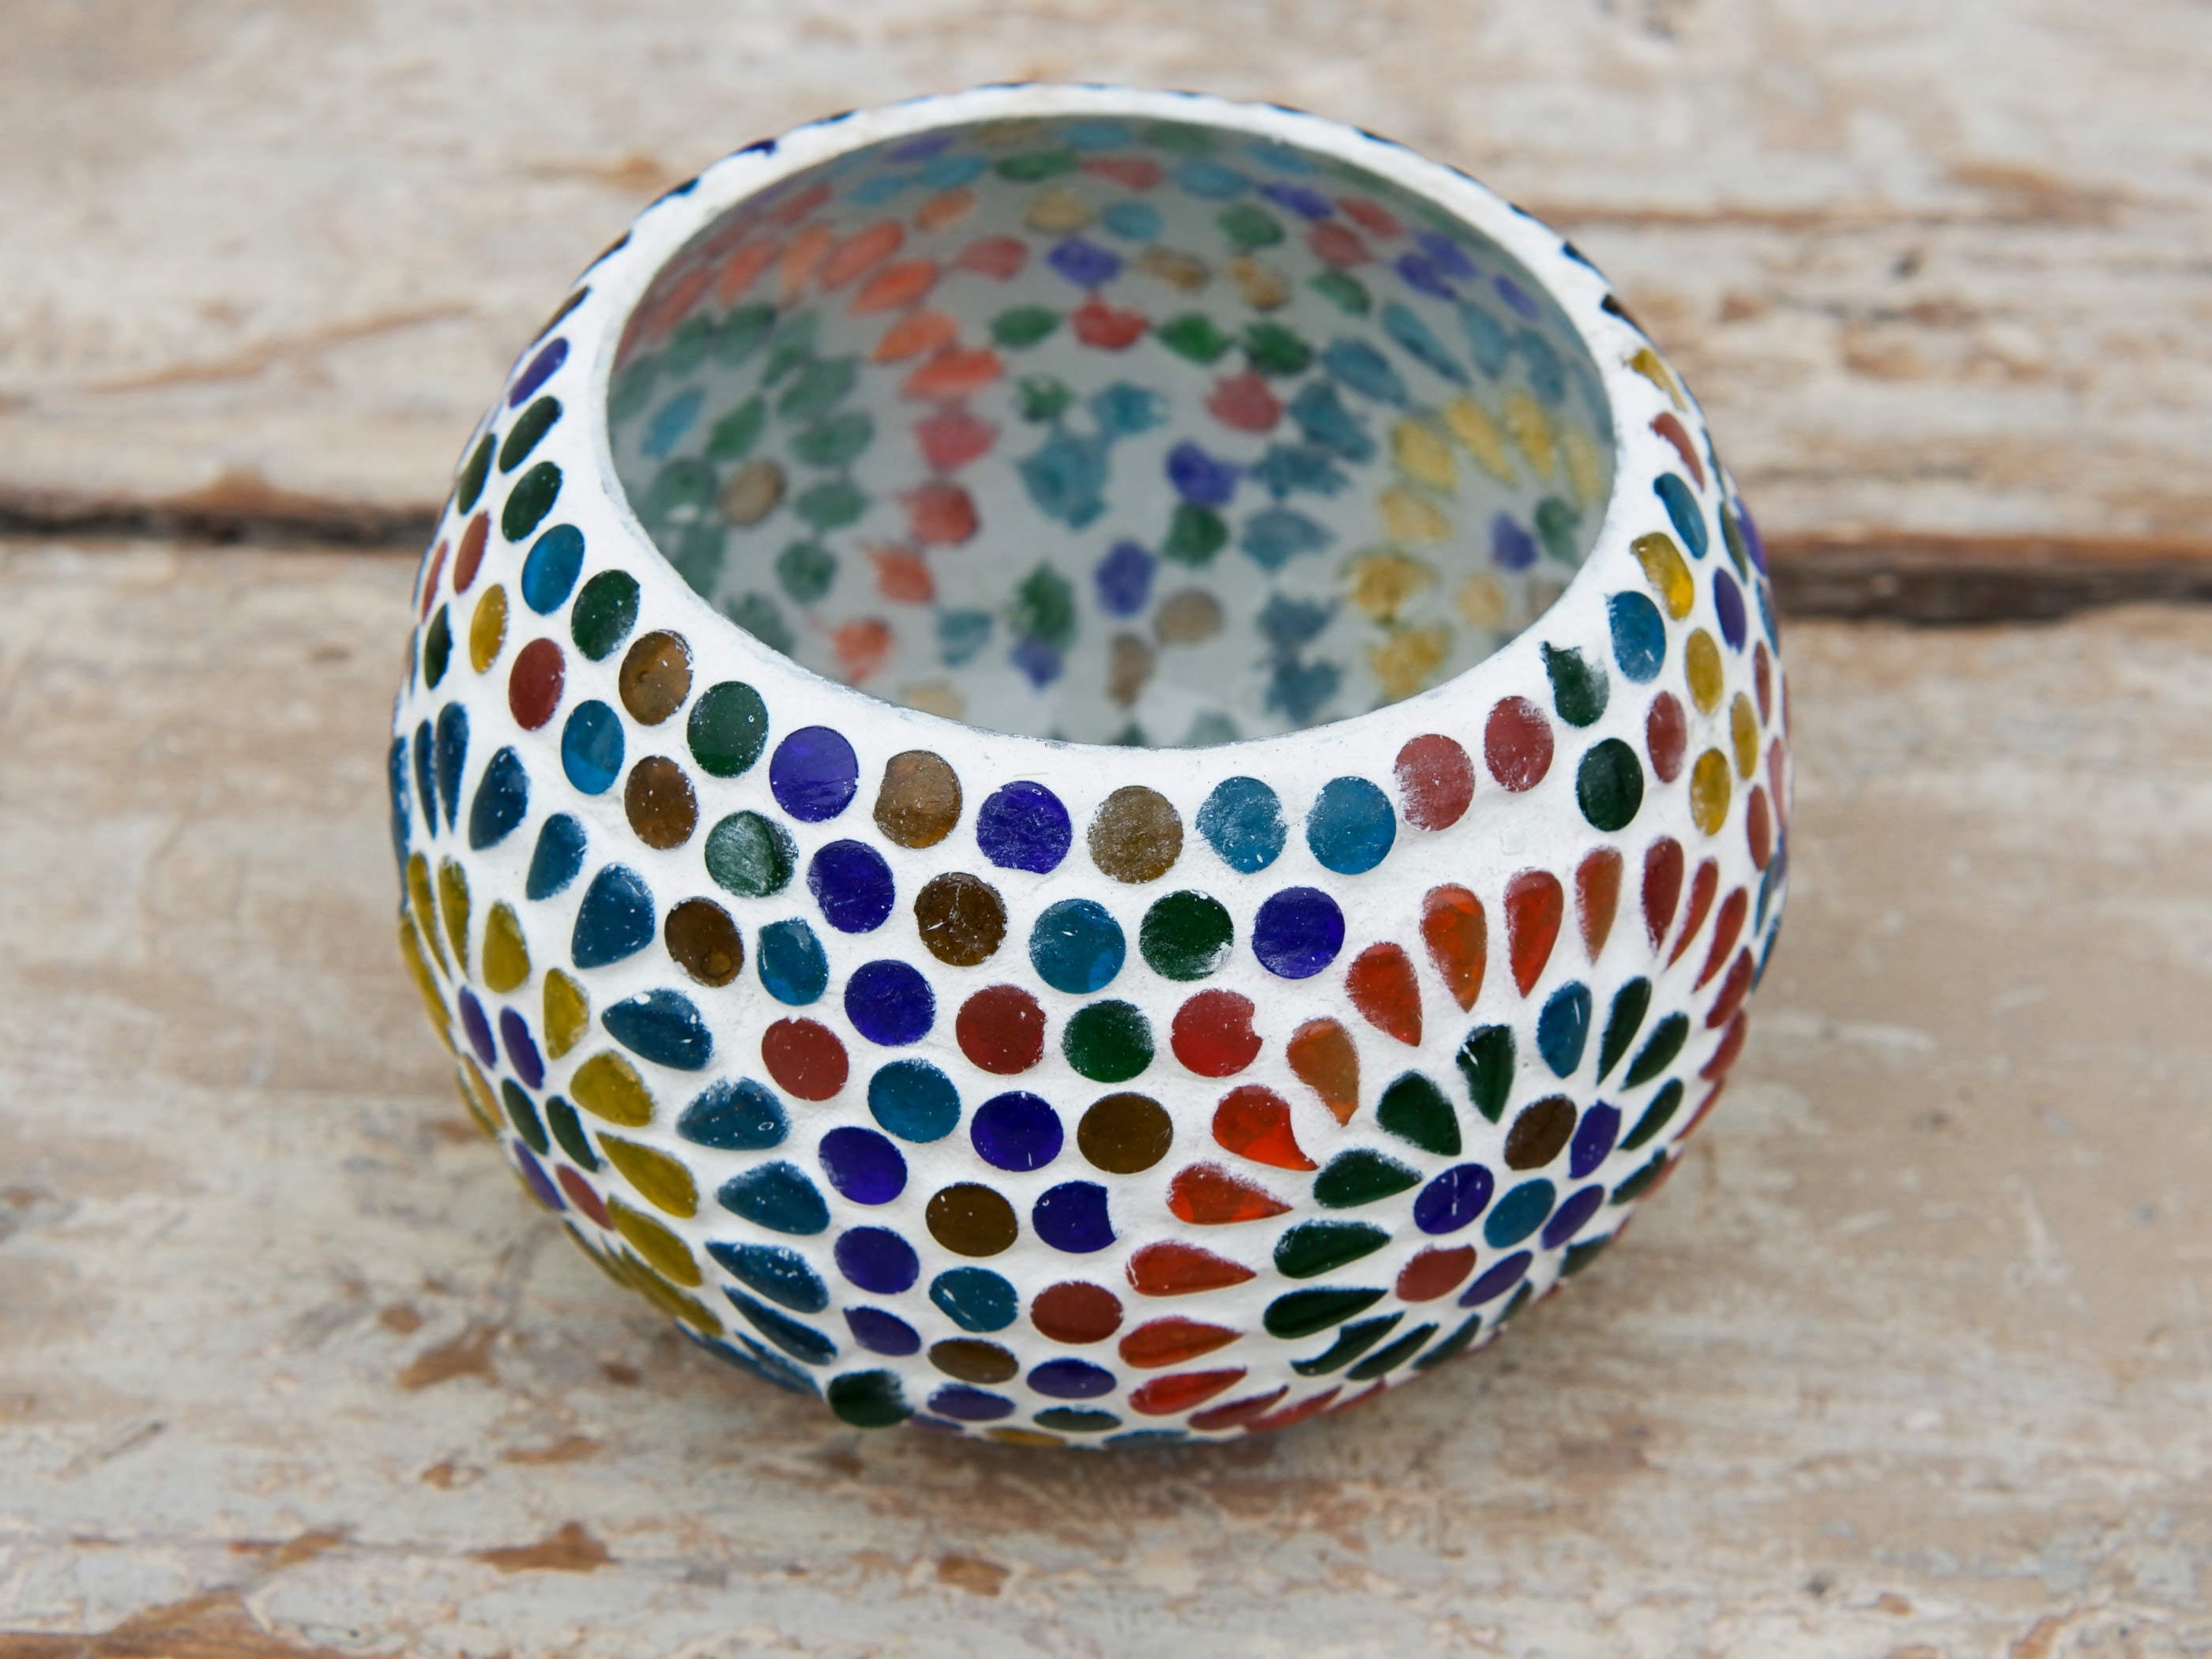 Ciotola portacandele lavorati a mosaico con vetro mix colori. Provenienza India. Dimensioni diametro 12 h 10cm.